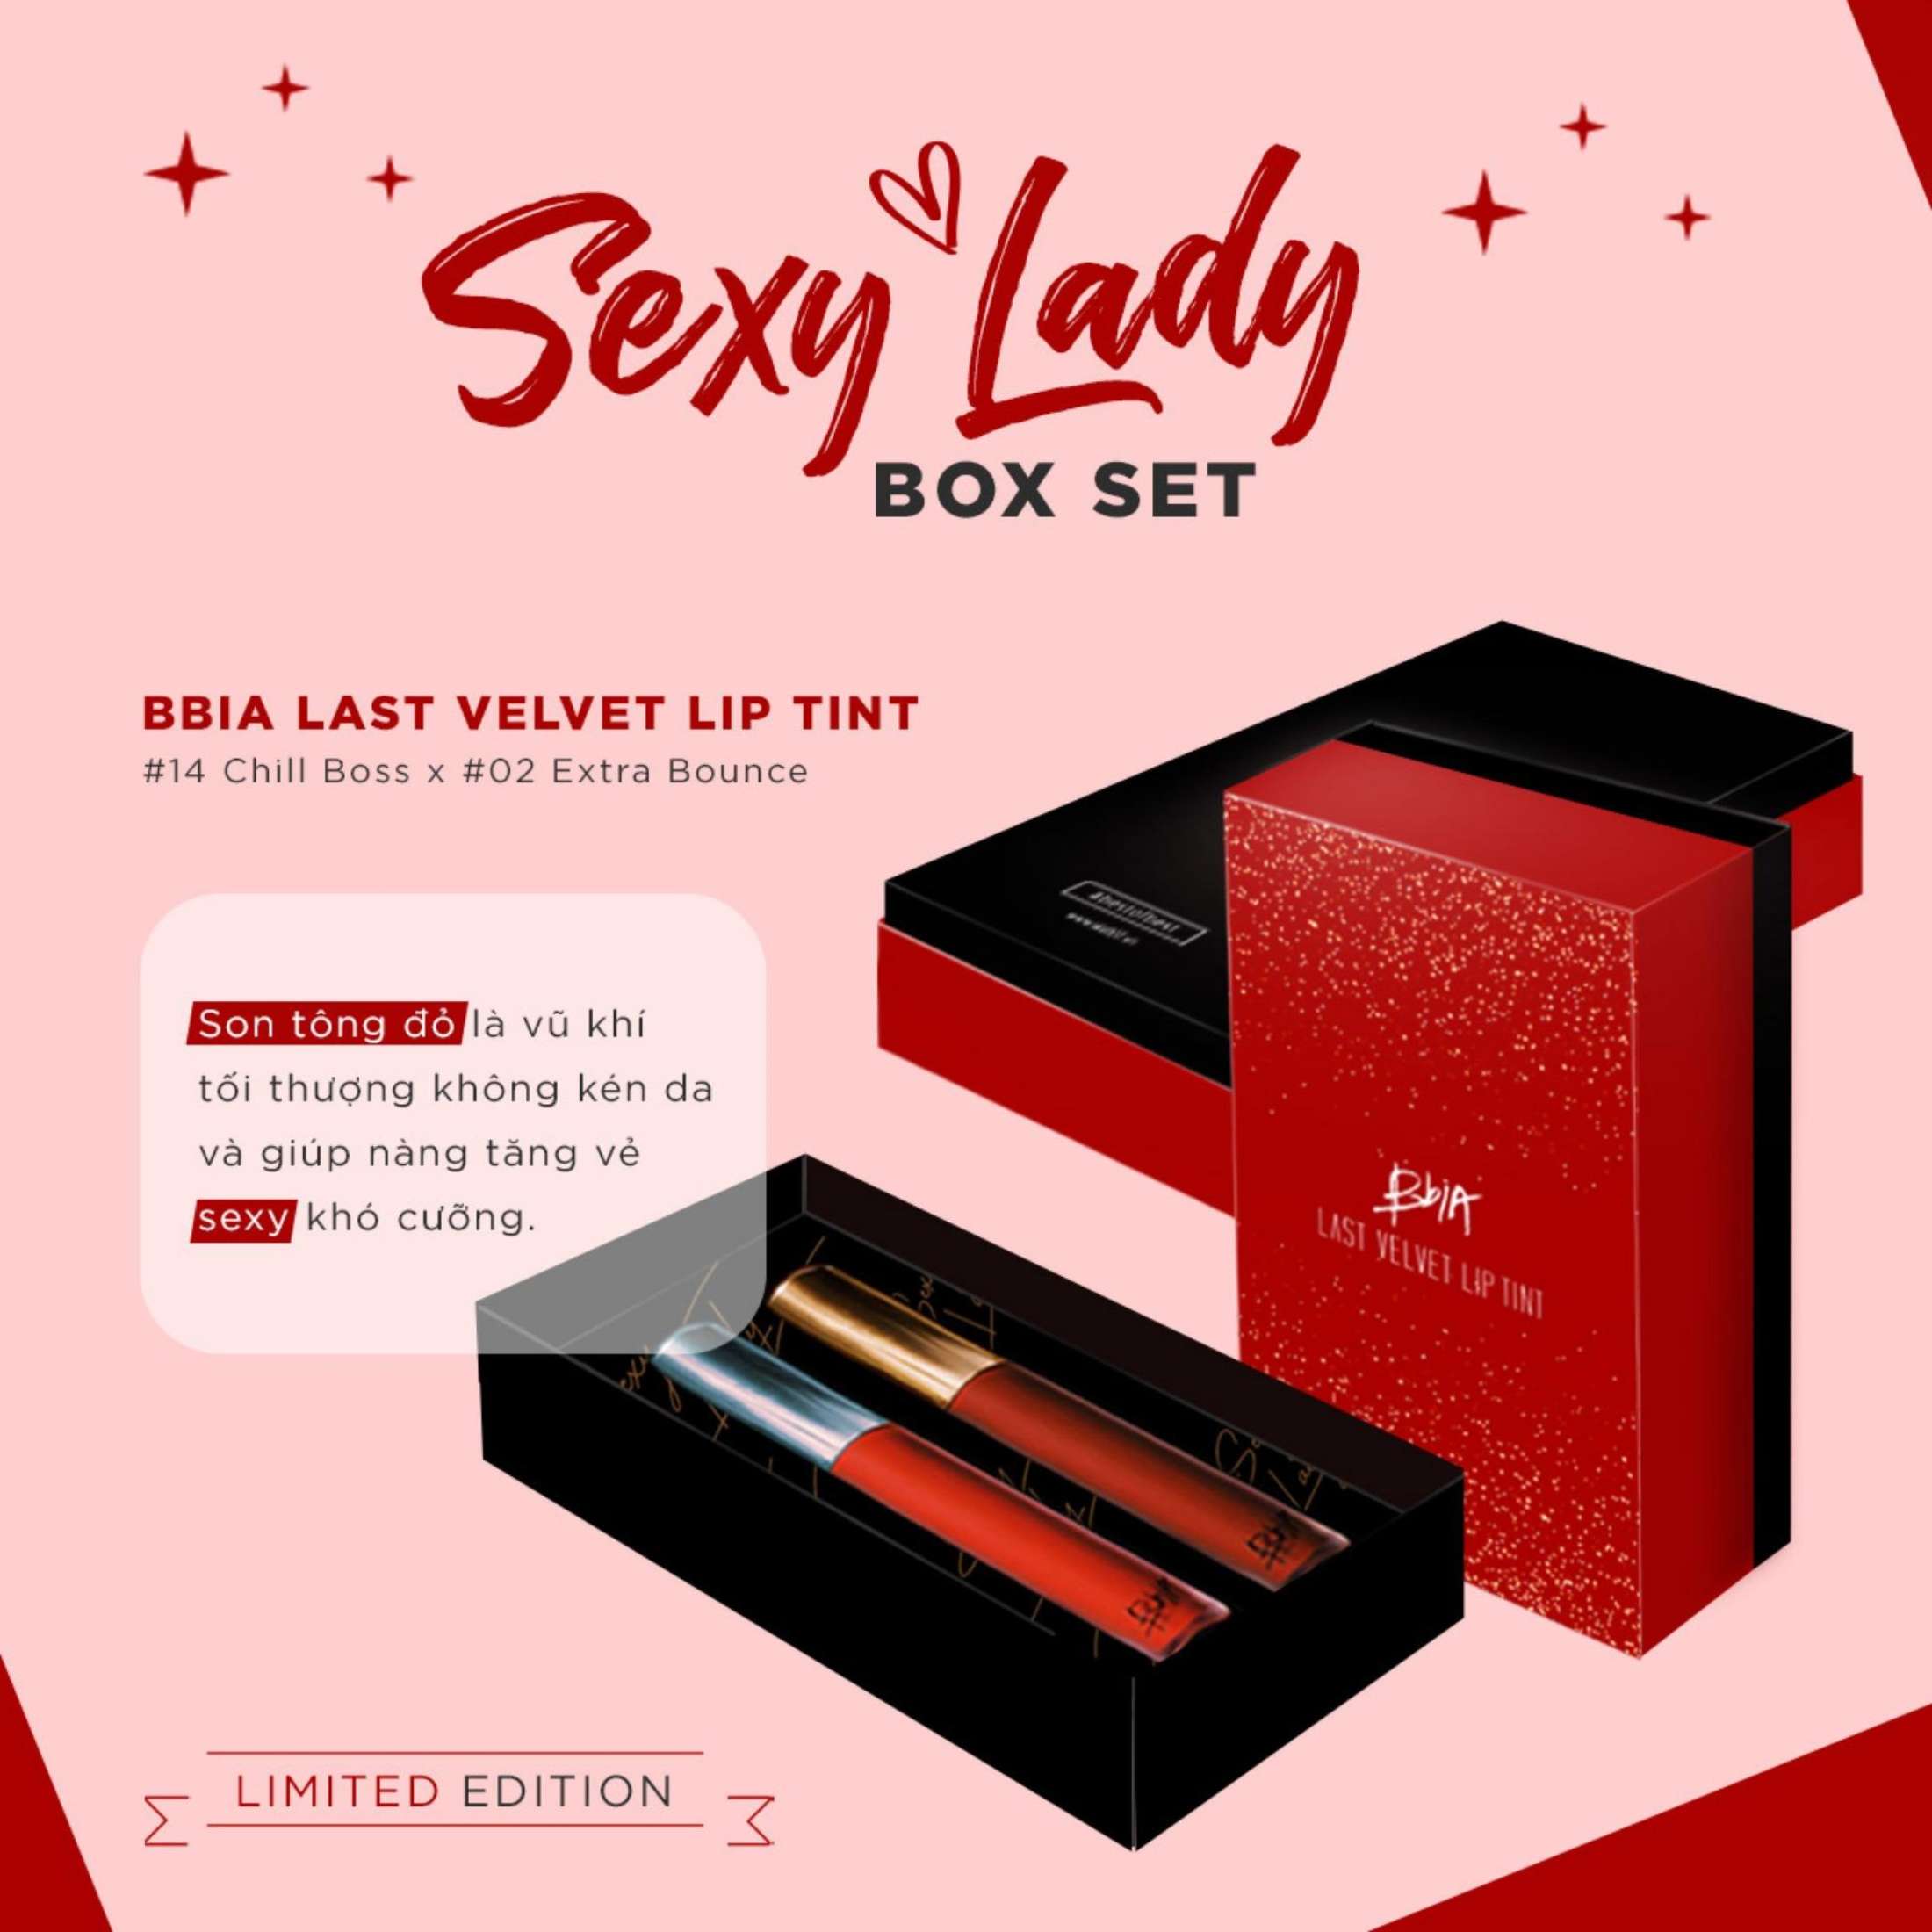 Set 2 Cây Son Kem Lì Bbia Last Velvet Lip Tint - Sexy Lady (2 Cây X 5g) Limited Edition tặng 1 gương trang điểm BBIA màu ngẫu nhiên